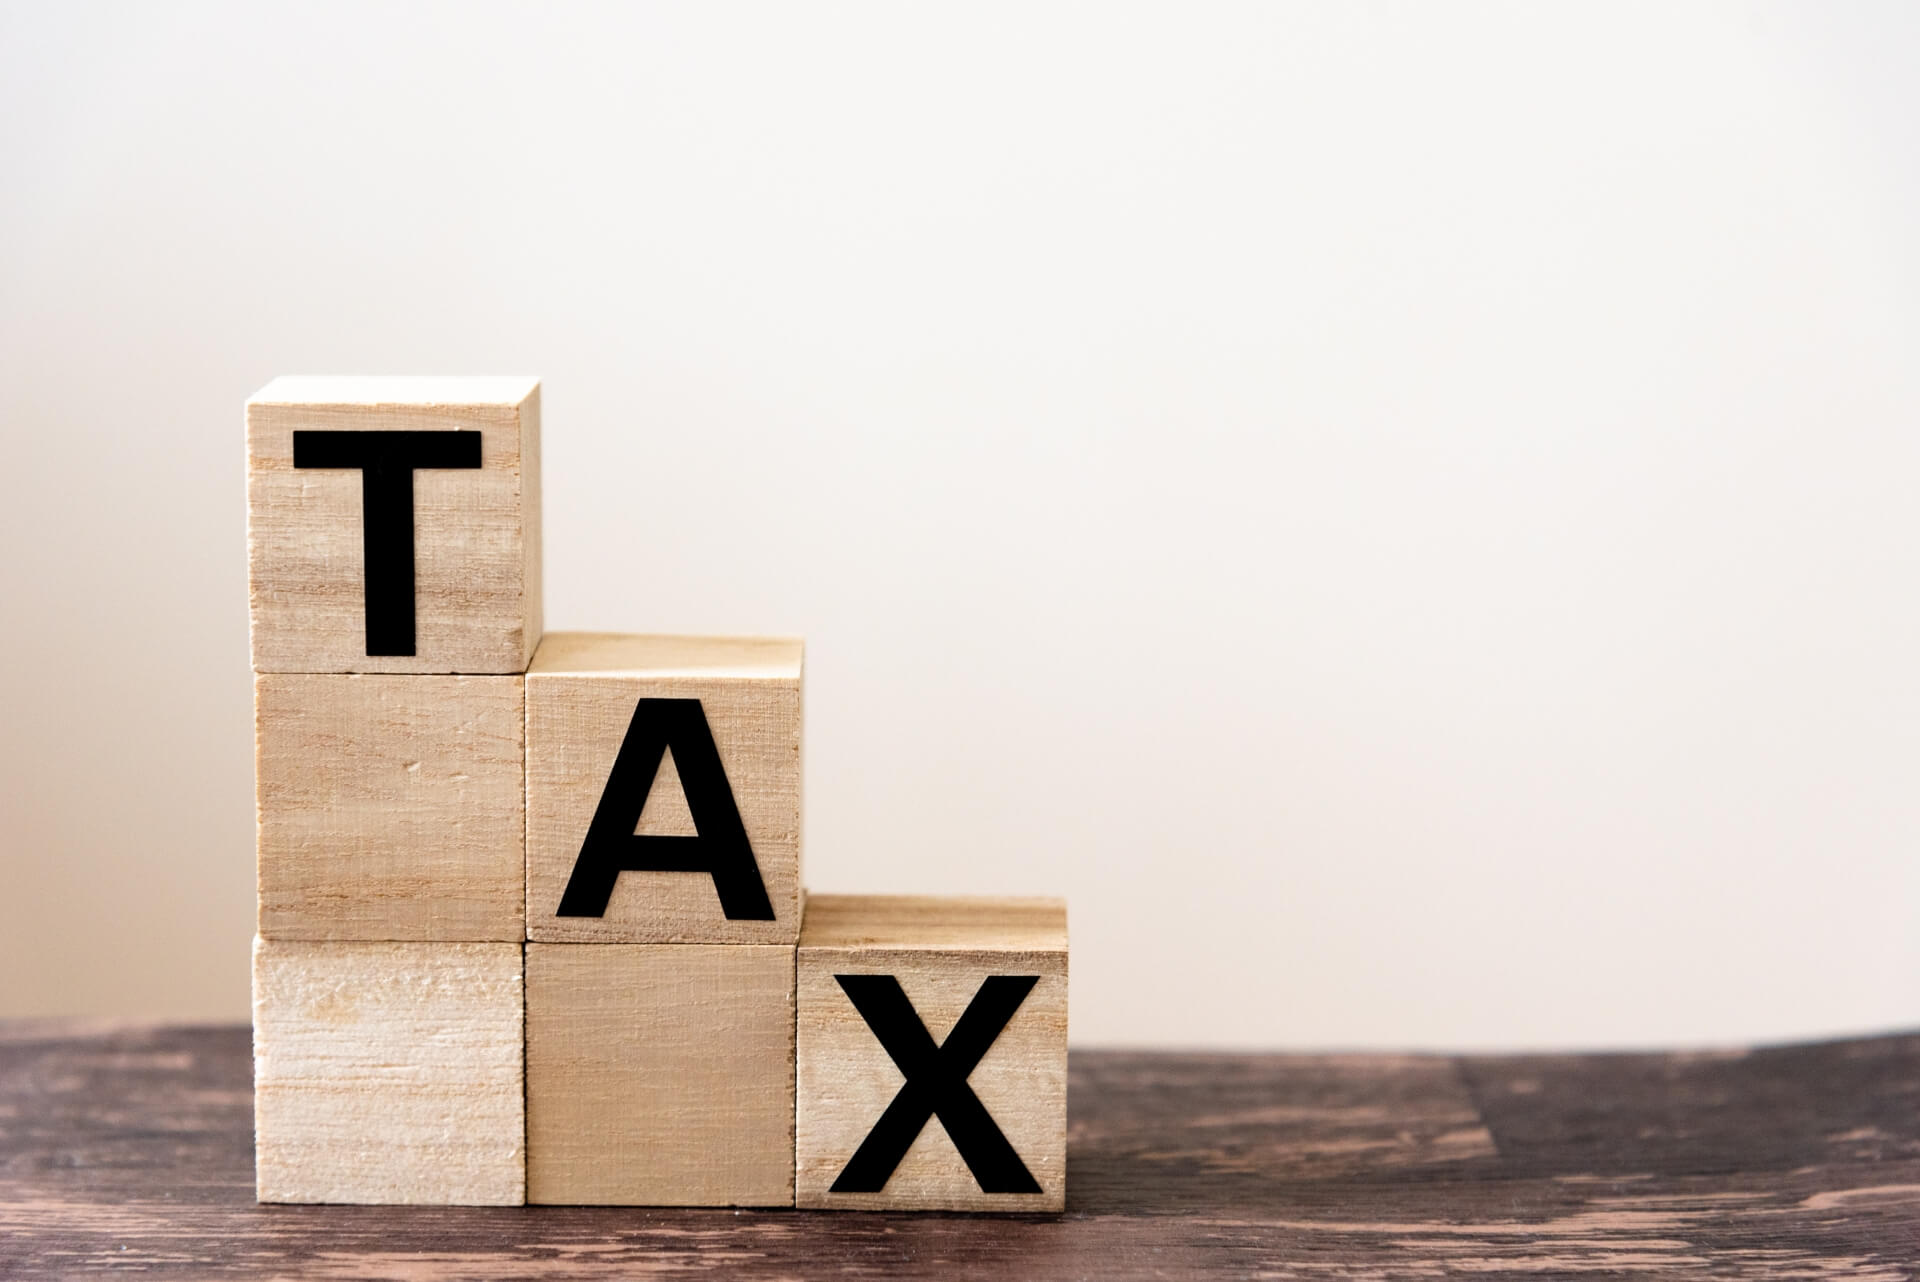 相続税の節税対策について